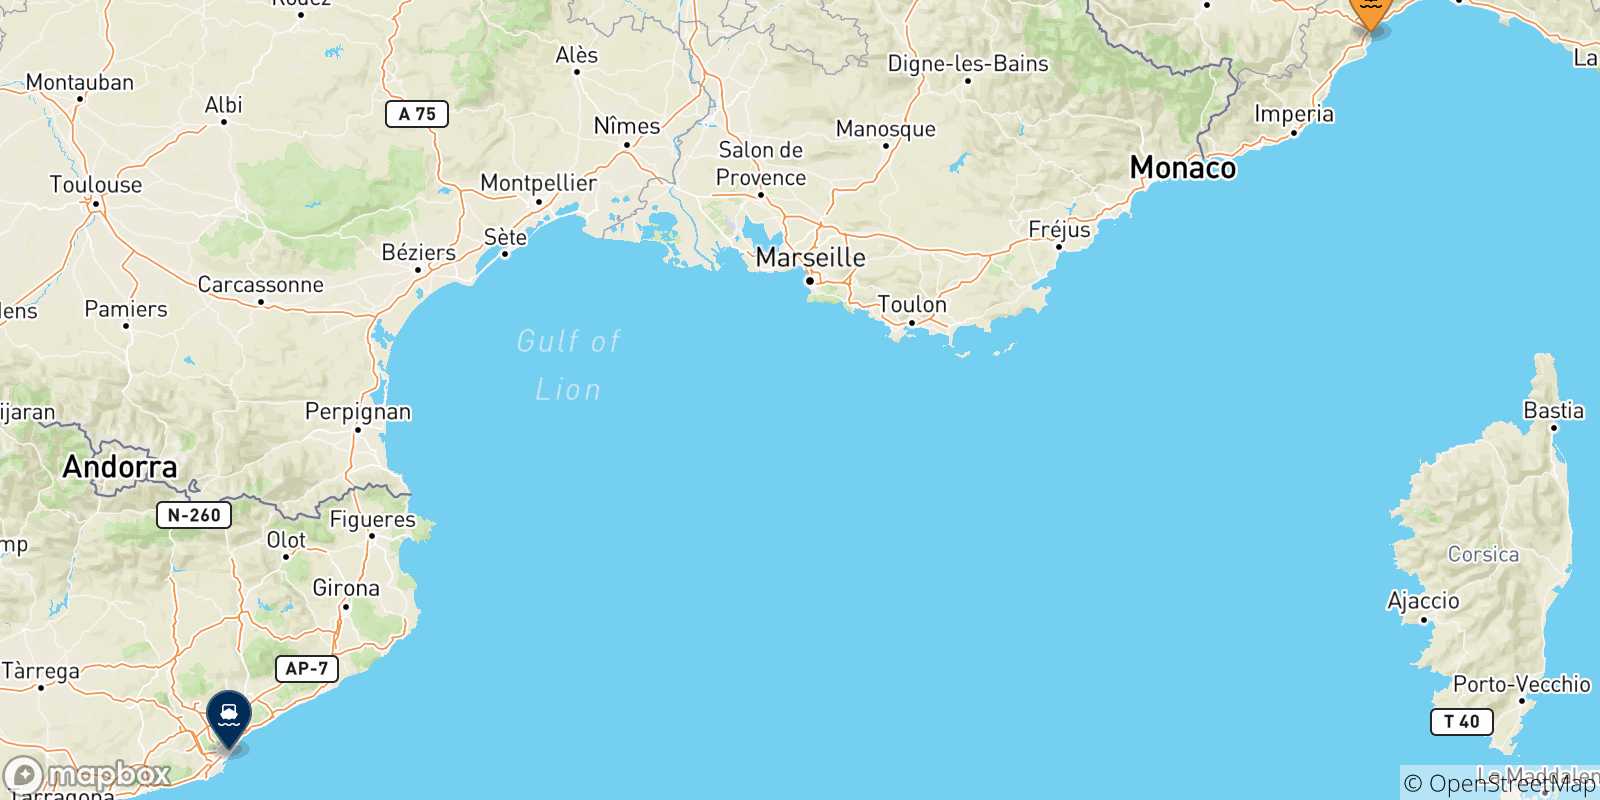 Mappa delle possibili rotte tra Savona e la Spagna